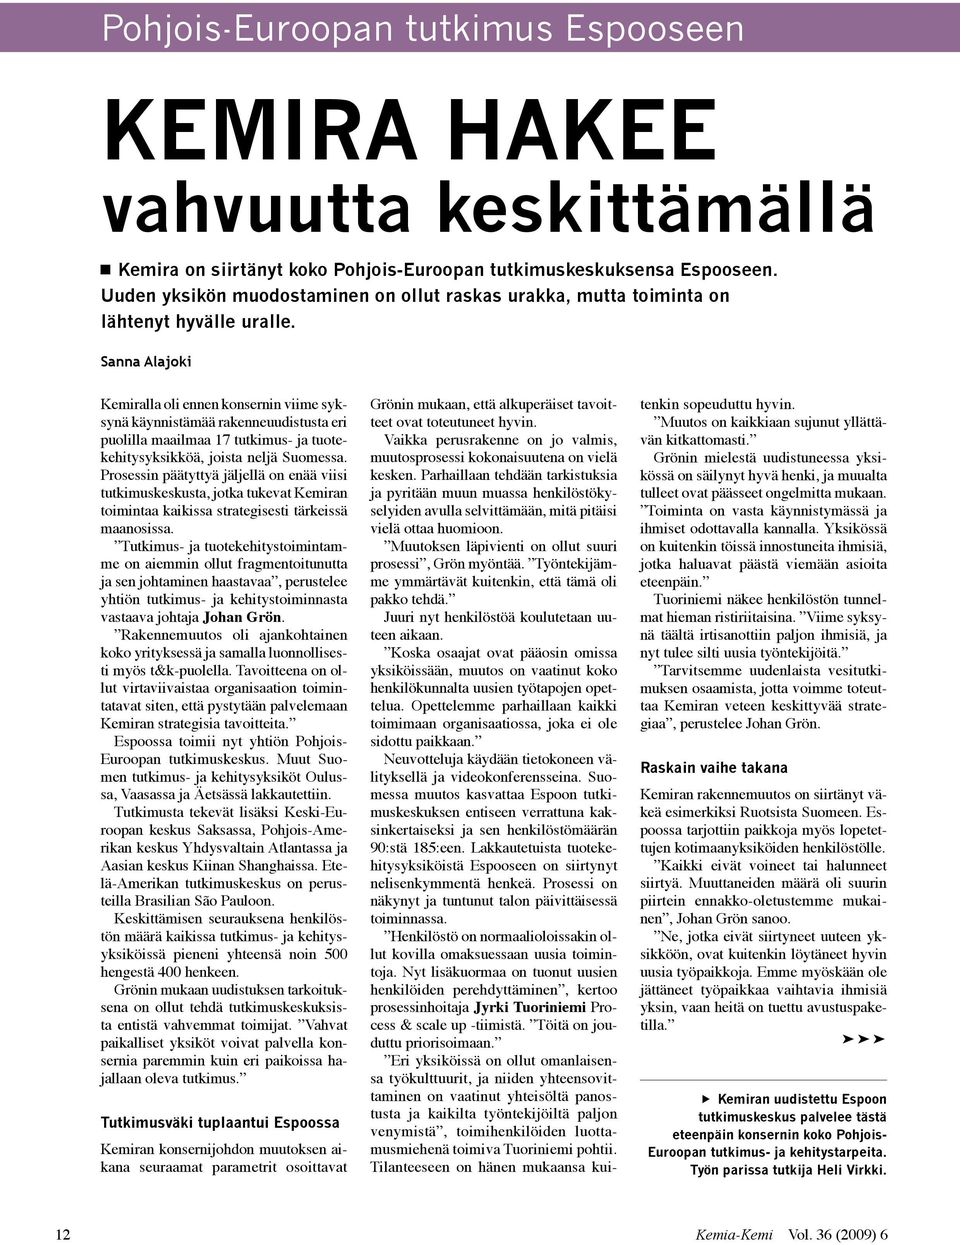 Sanna Alajoki Kemiralla oli ennen konsernin viime syksynä käynnistämää rakenneuudistusta eri puolilla maailmaa 17 tutkimus- ja tuotekehitysyksikköä, joista neljä Suomessa.